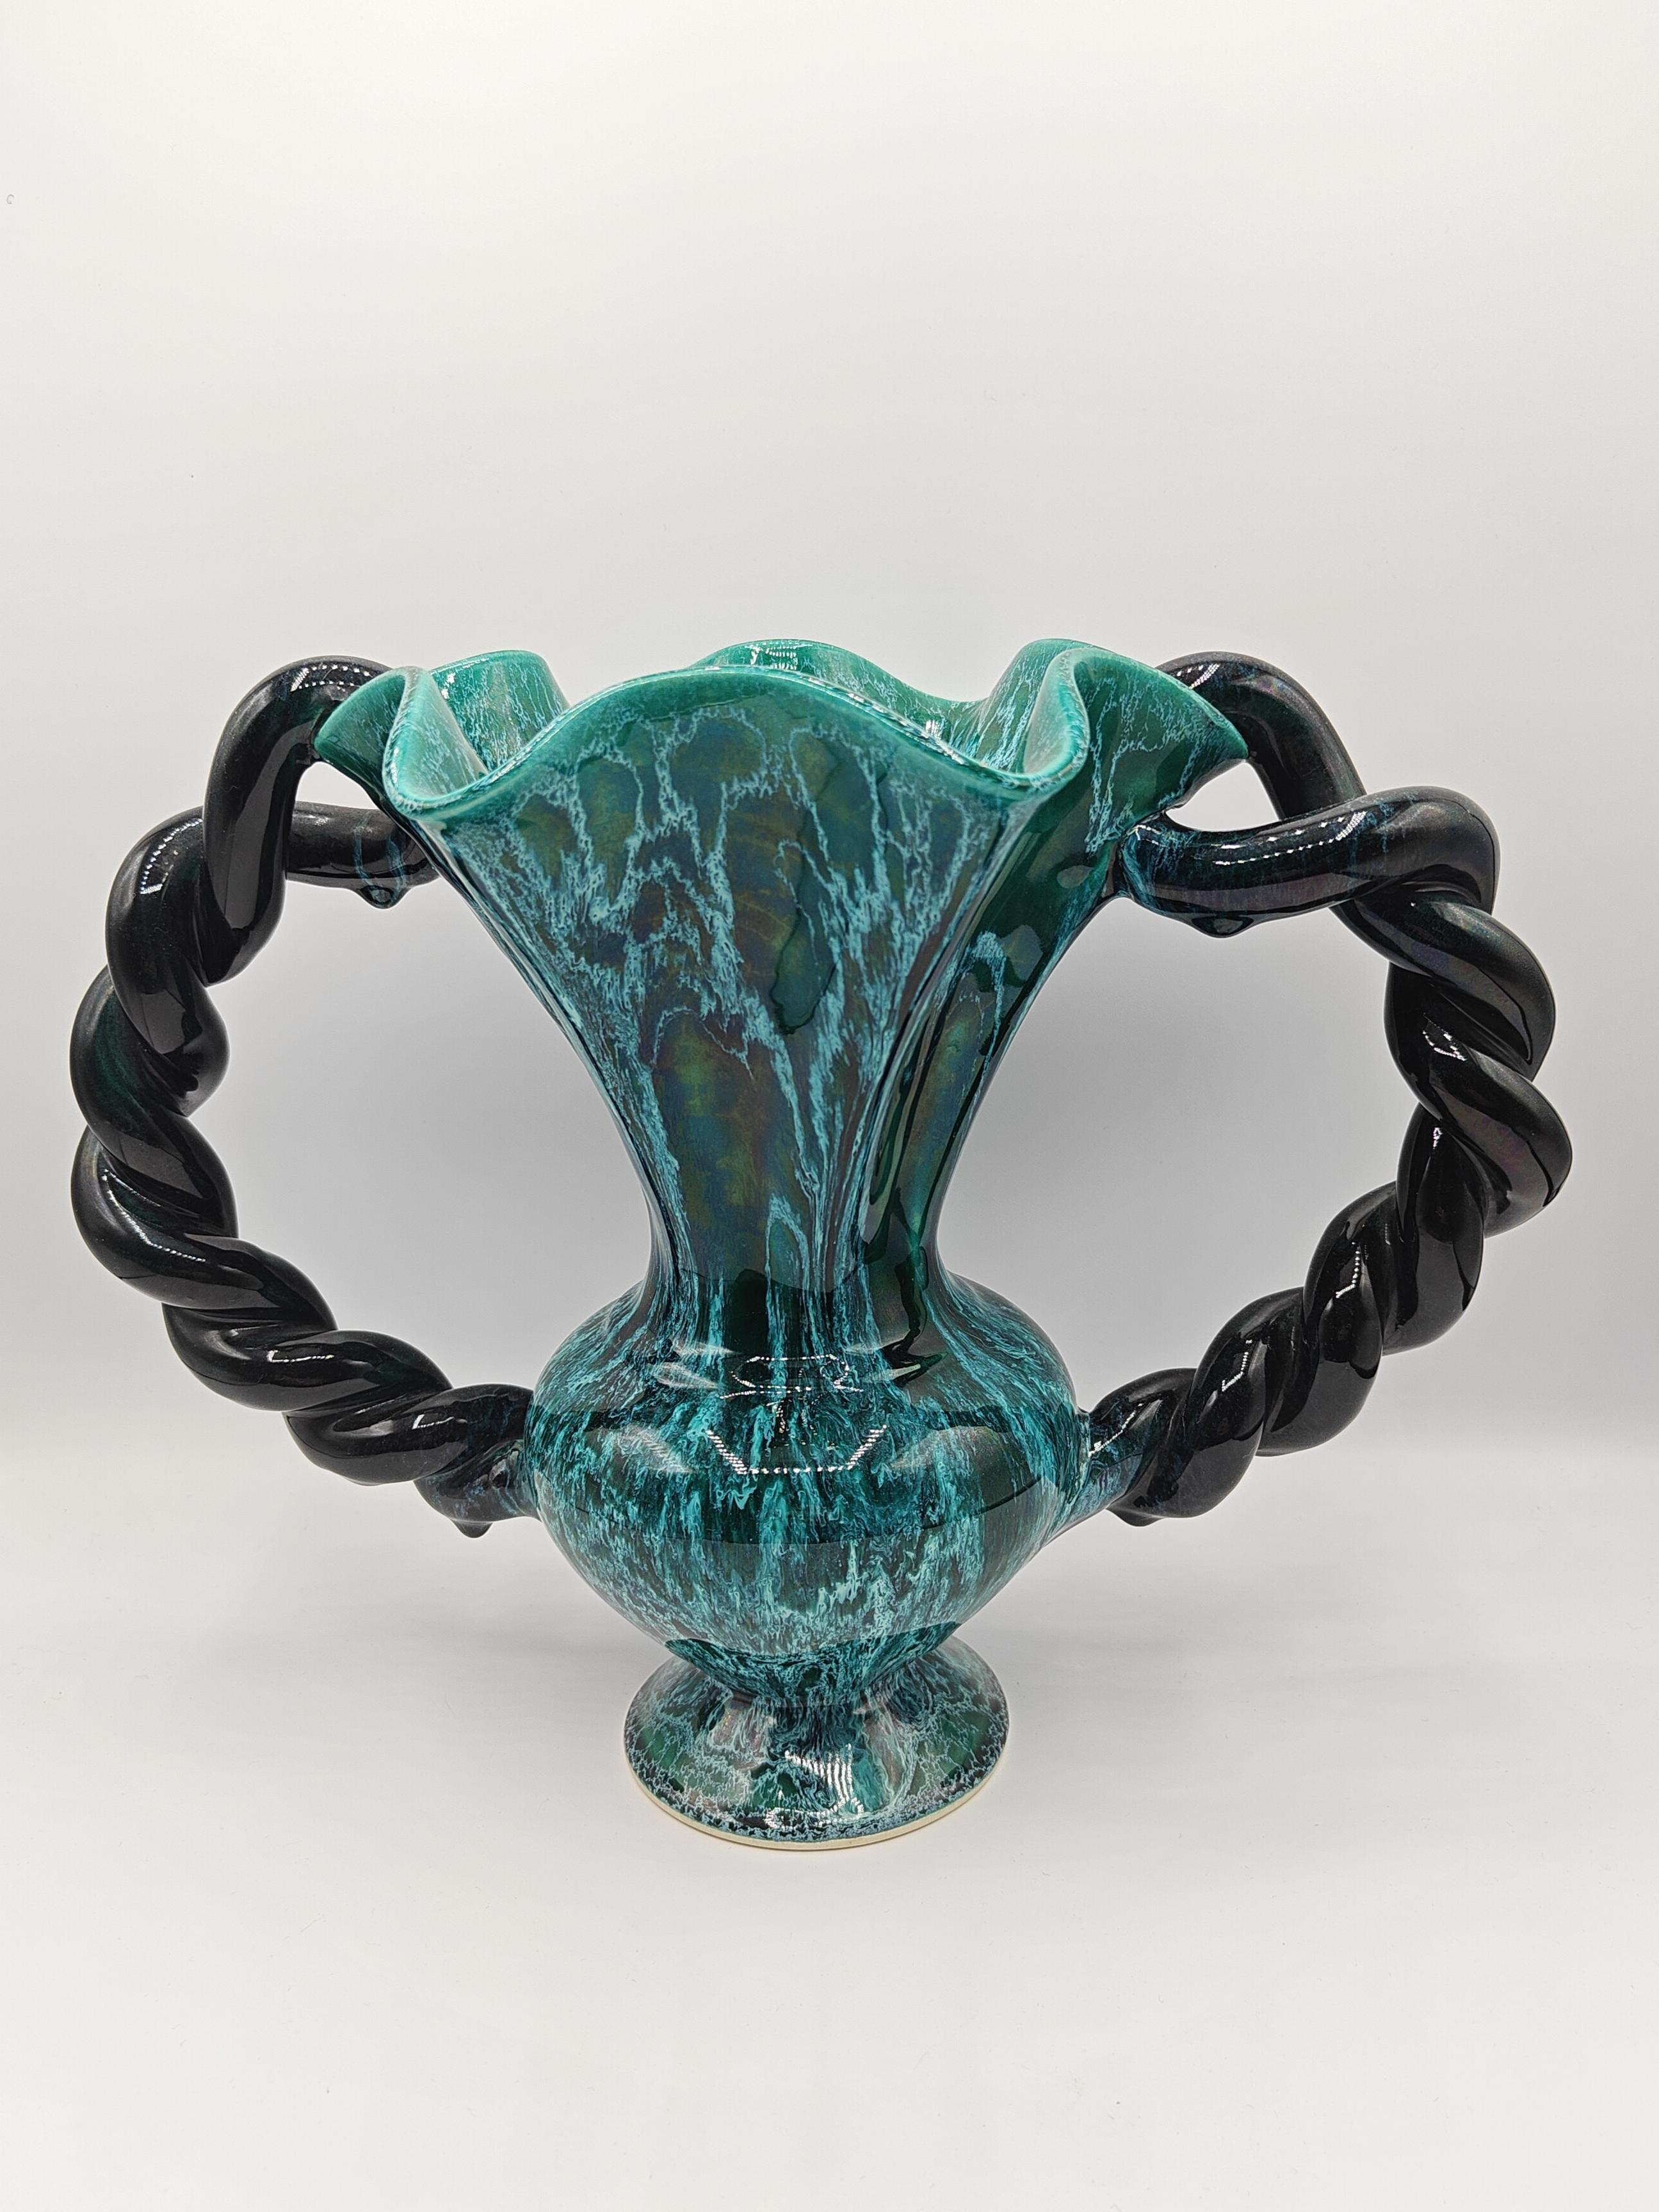 Prächtige Vase aus den 1950er Jahren, aus emaillierter Keramik, von Marius Giuge, Keramiker aus Vallauris. Die malachitgrüne Emaille mit diesen weißen oder schwarzen Farbverläufen ist in den Arbeiten von Marius Giuge gut zu erkennen. 

Diese Vase